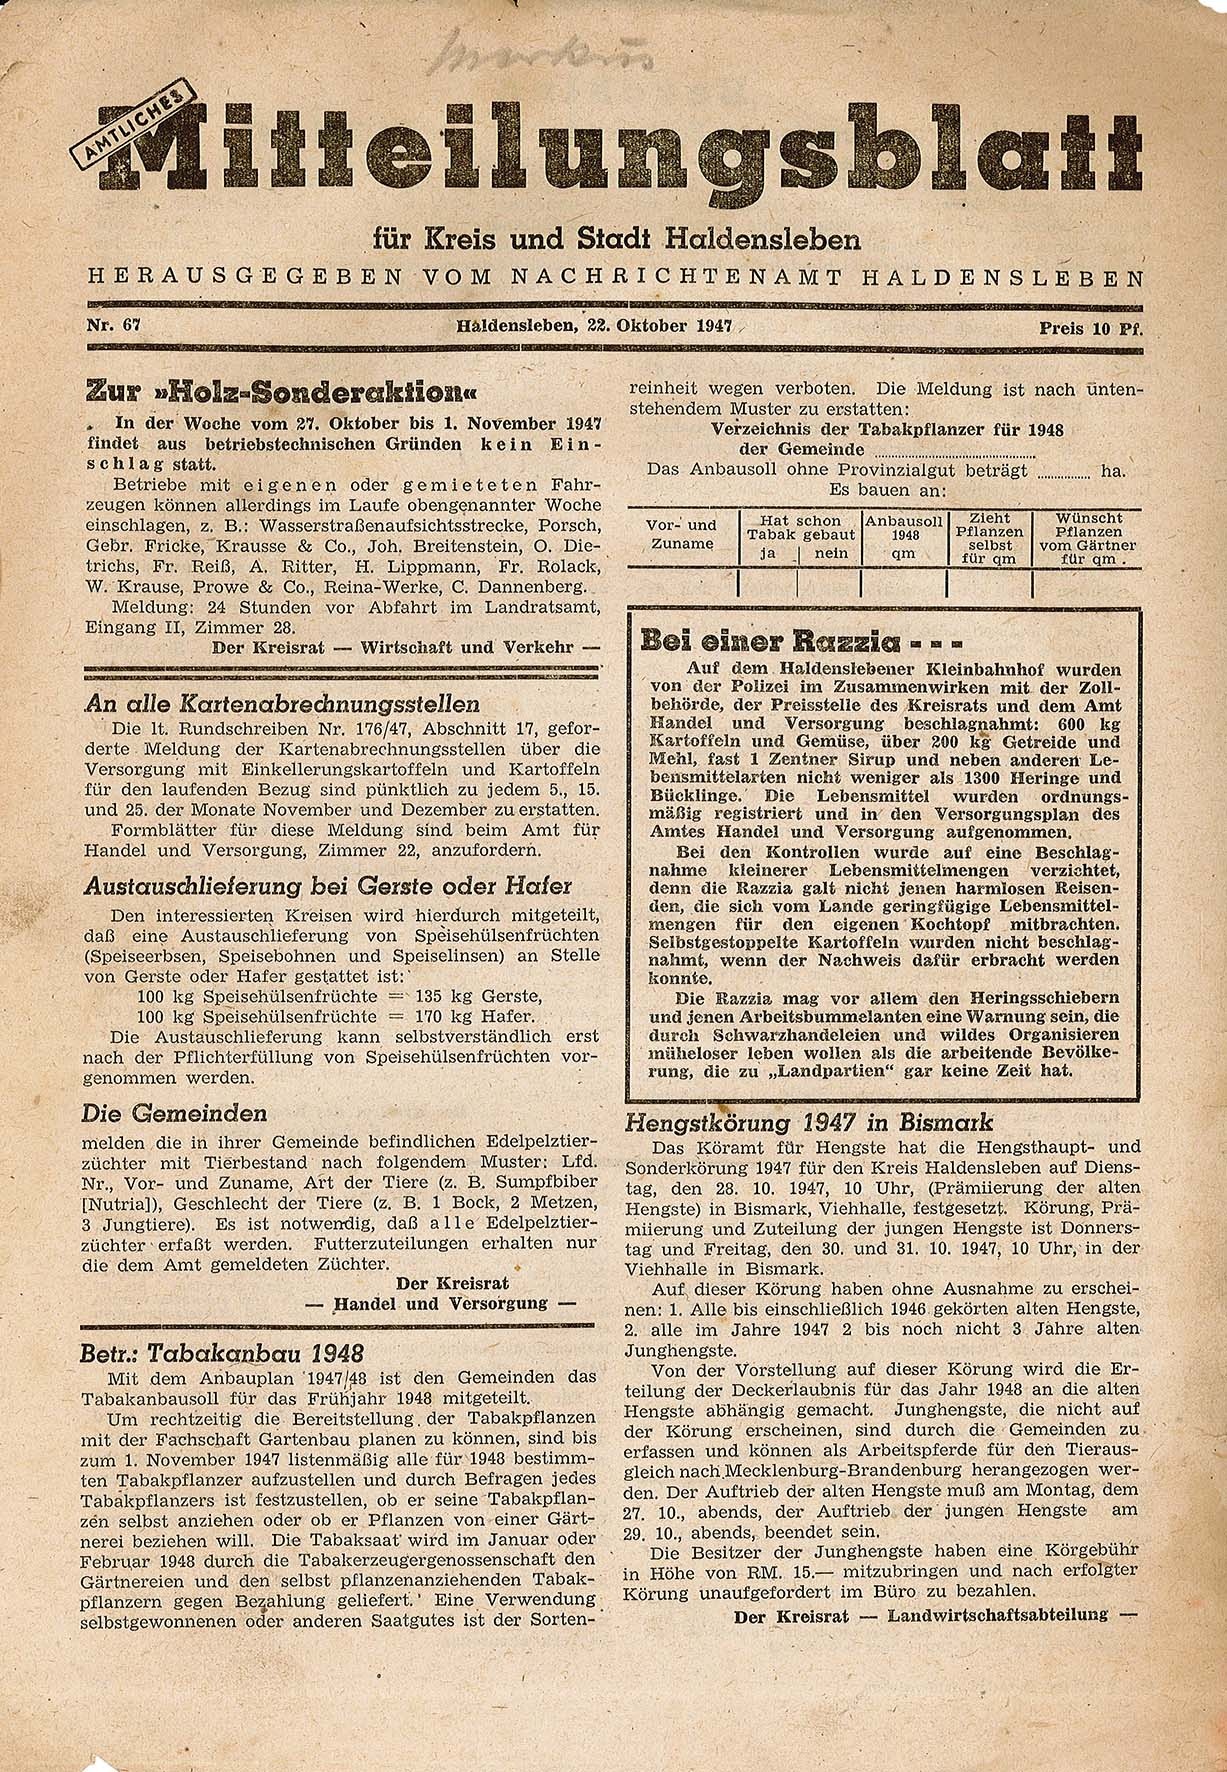 Amtliches Mitteilungsblatt für Kreis und Stadt Haldensleben Nr. 67, 22. Oktober 1947 (Museum Wolmirstedt RR-F)